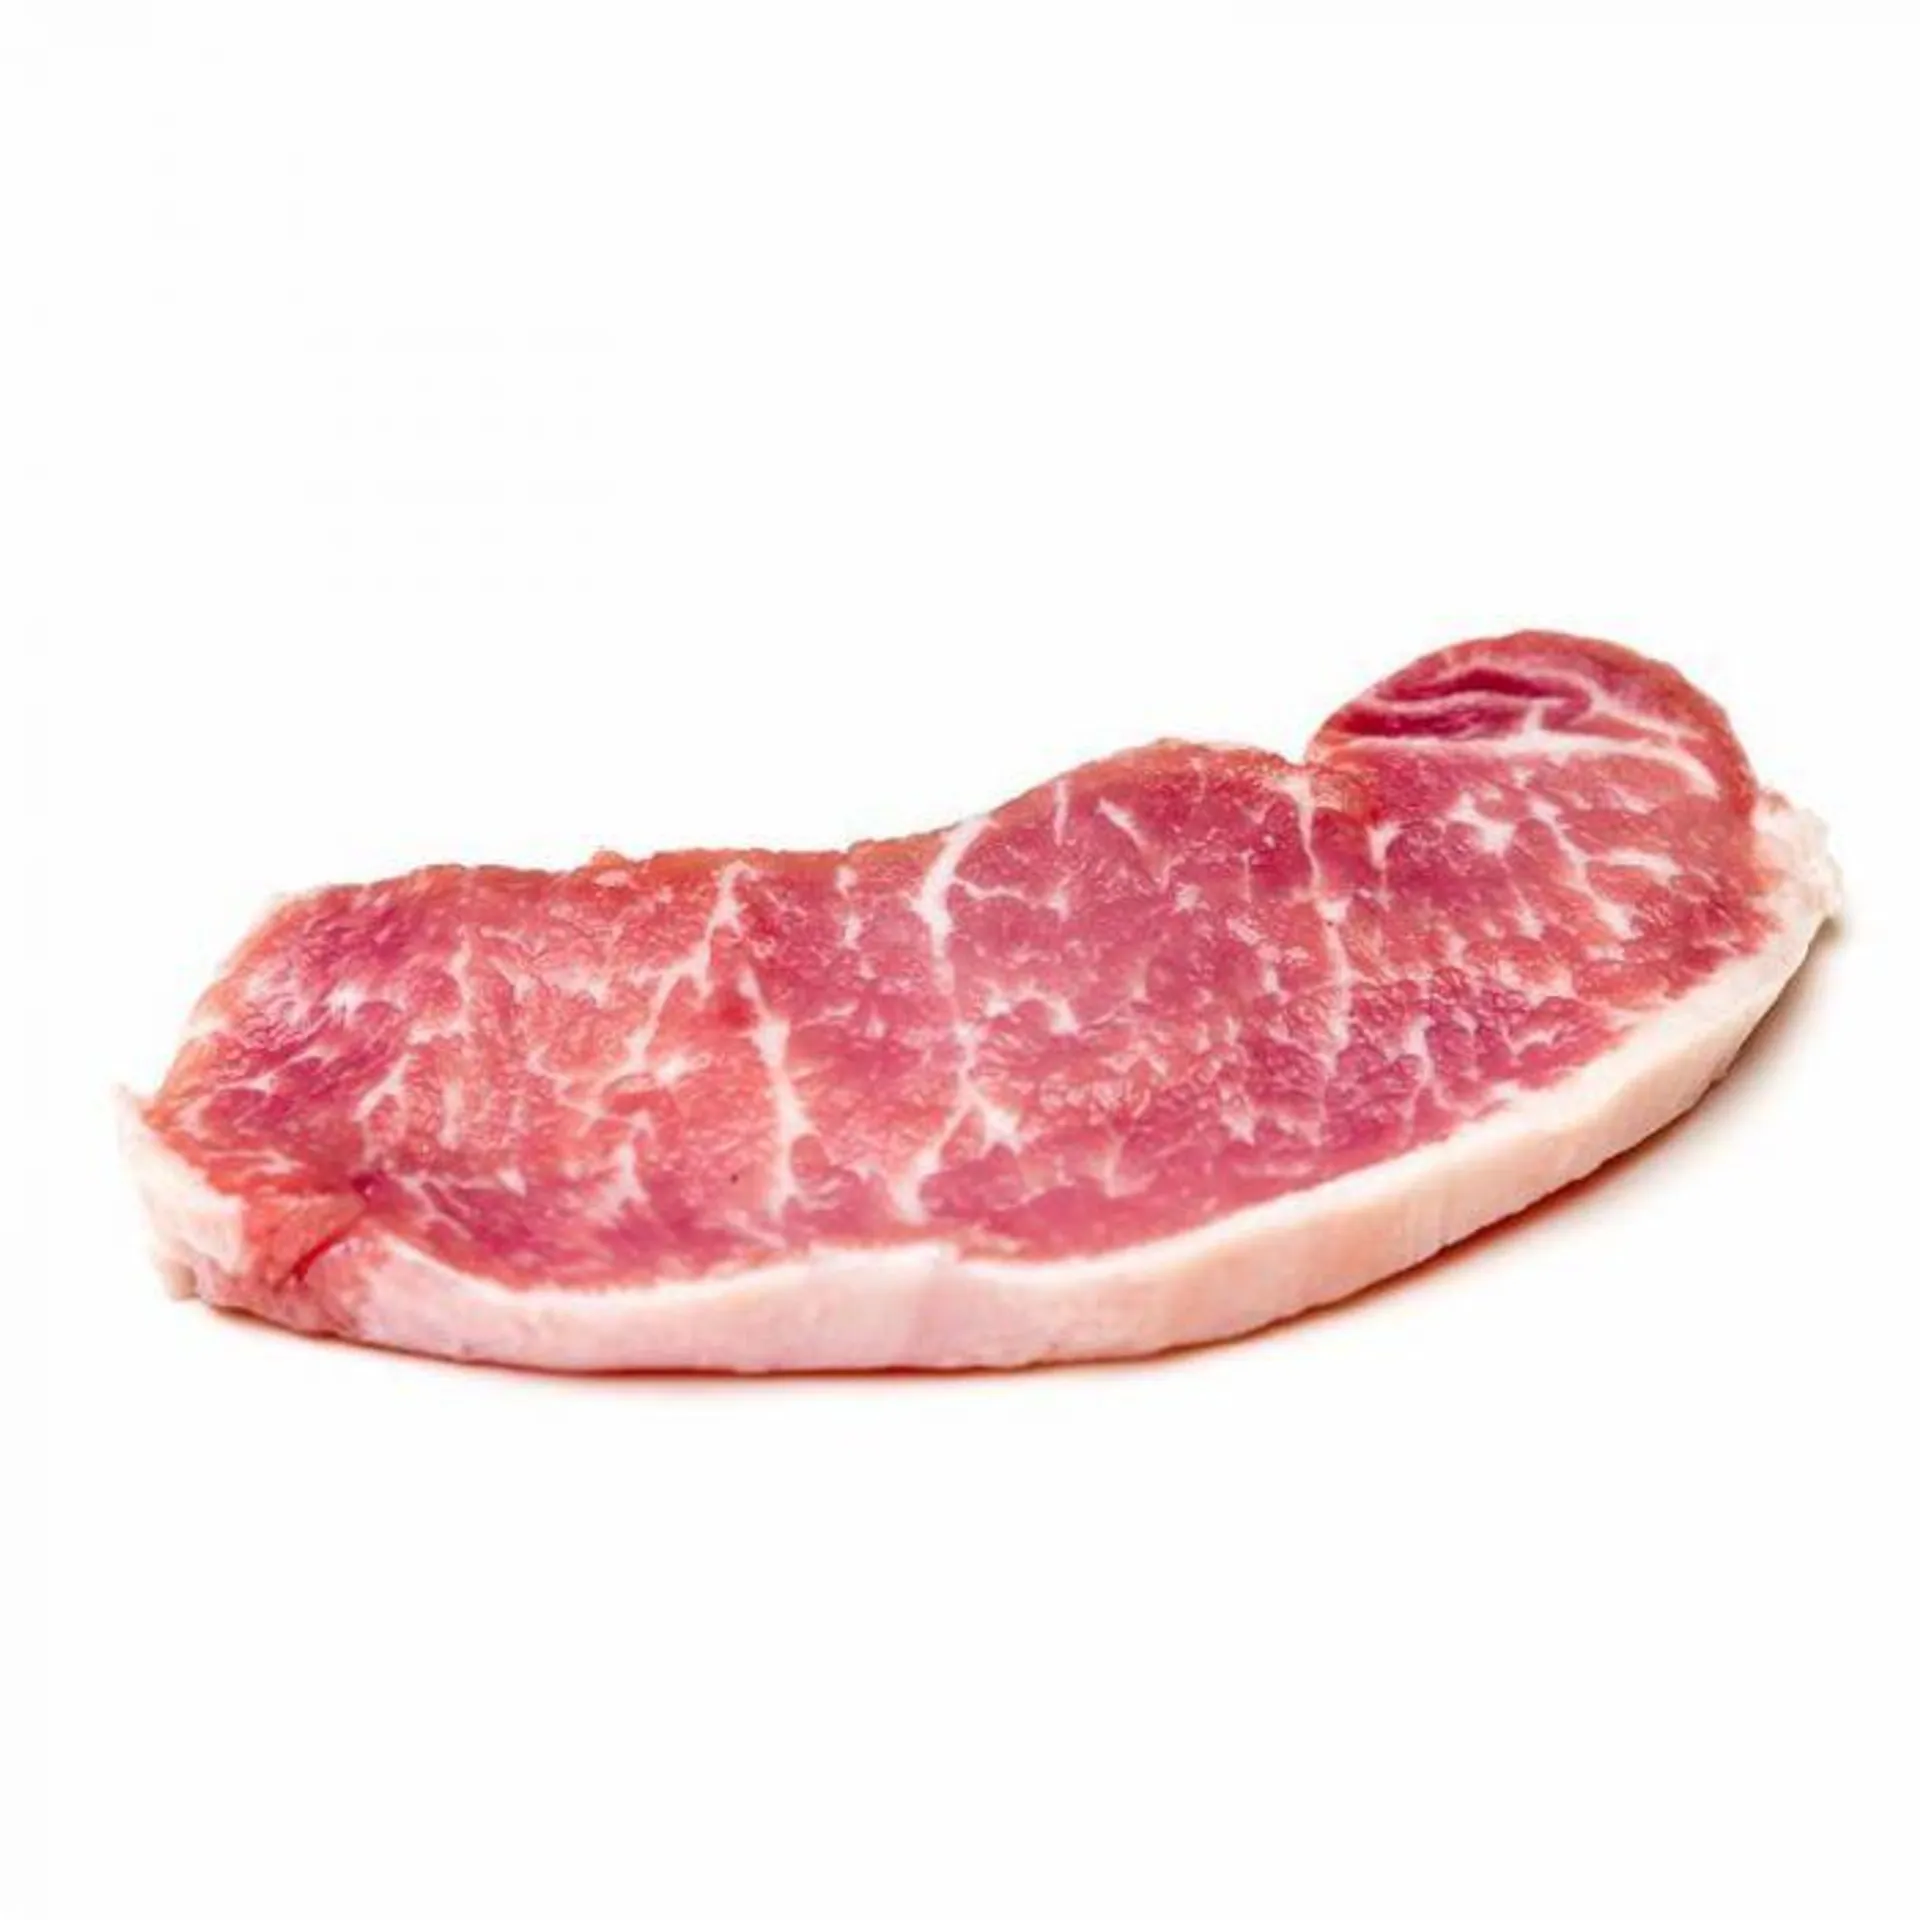 Lomo de cerdo ibérico fresco